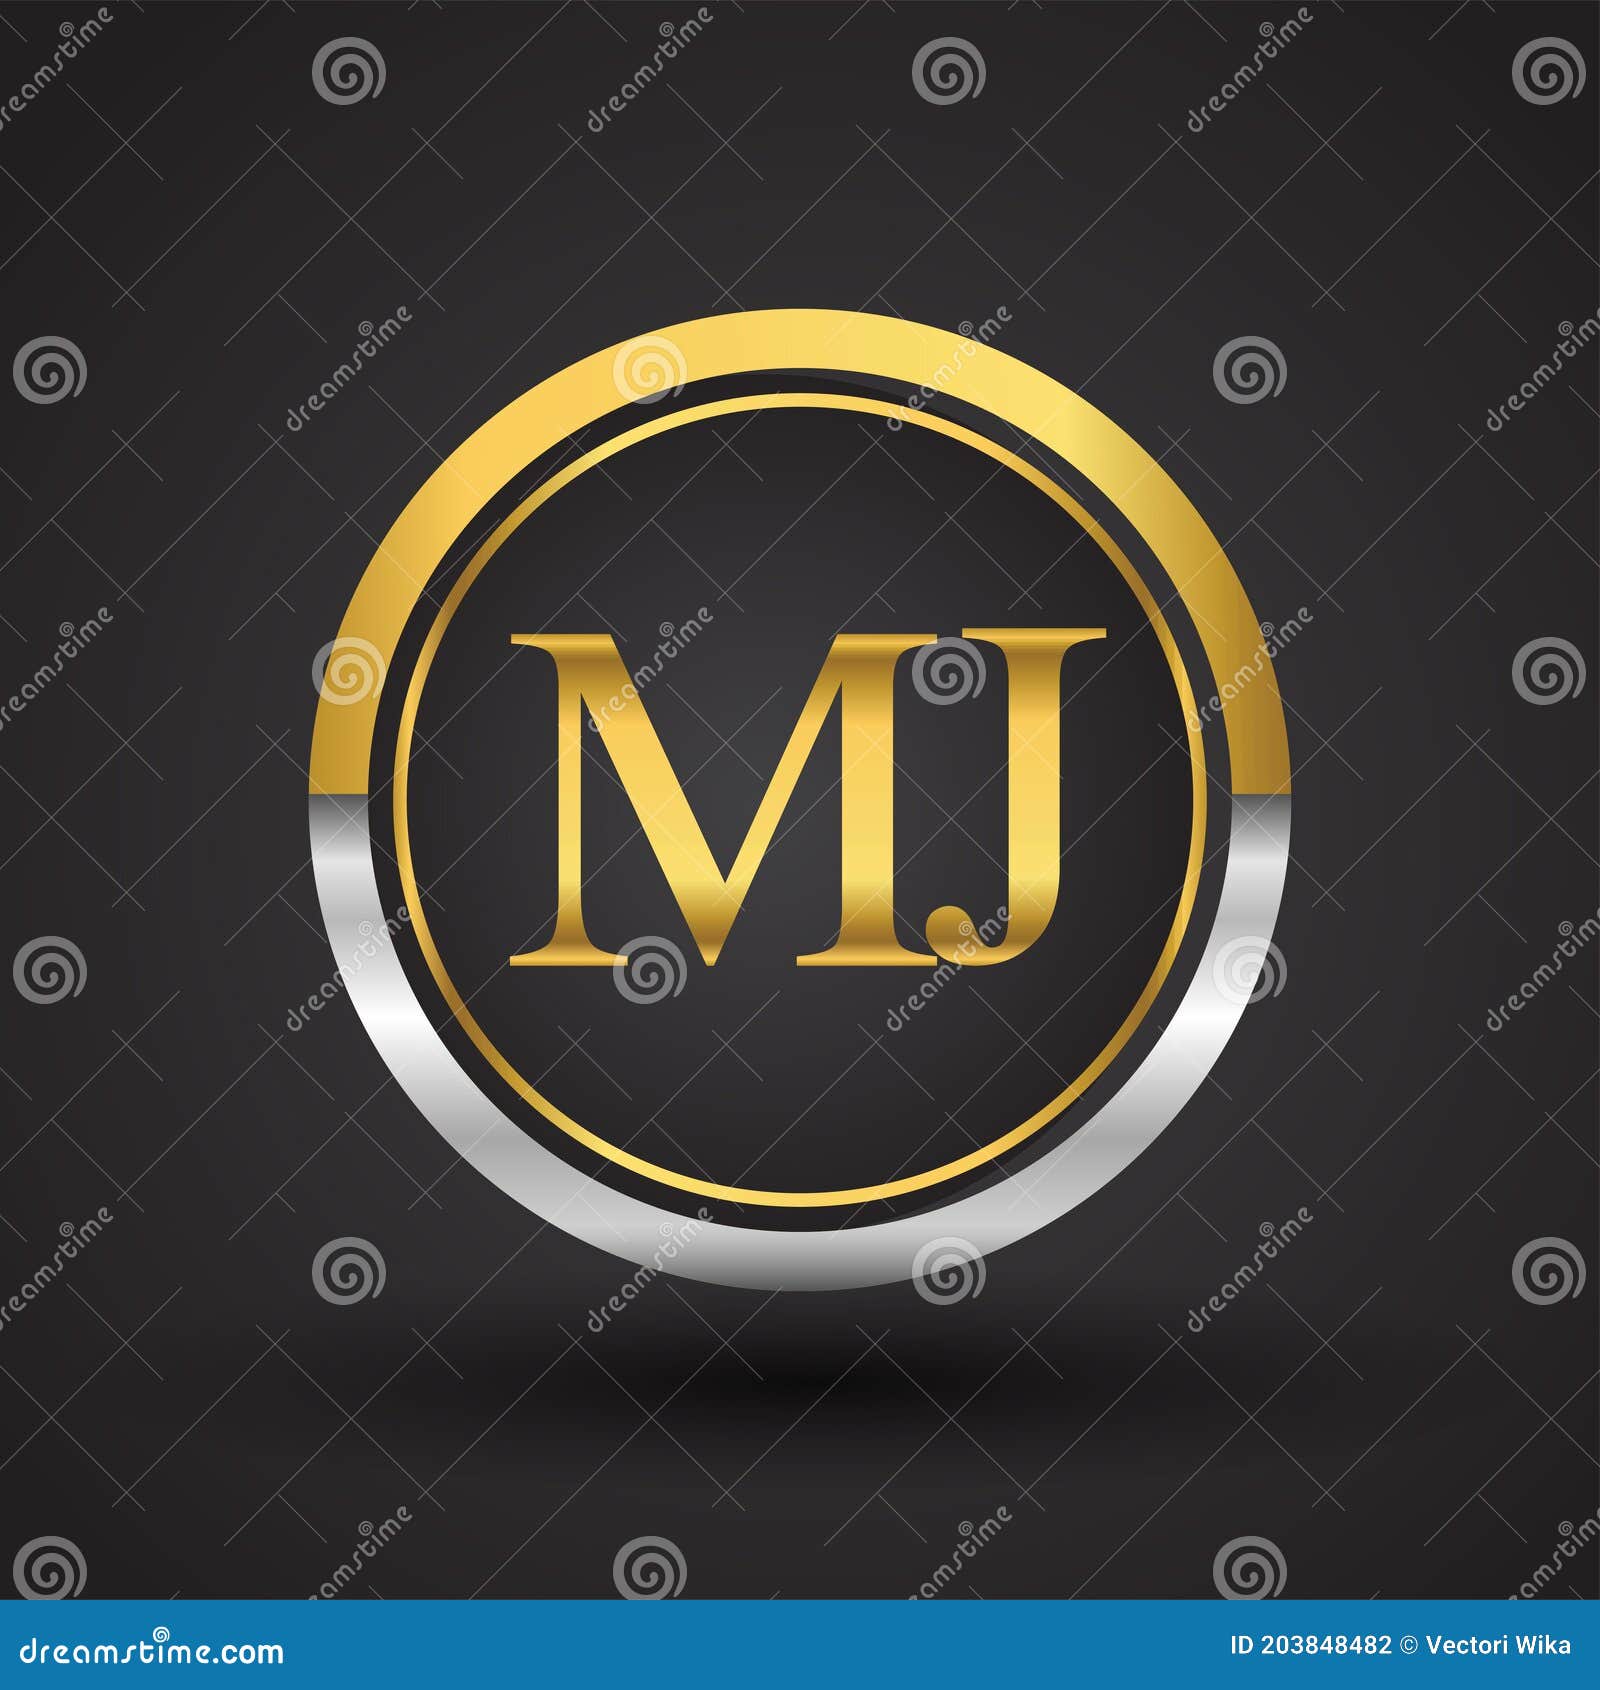 Mj Circle Shape Vector Design Stock Illustration - Download Image